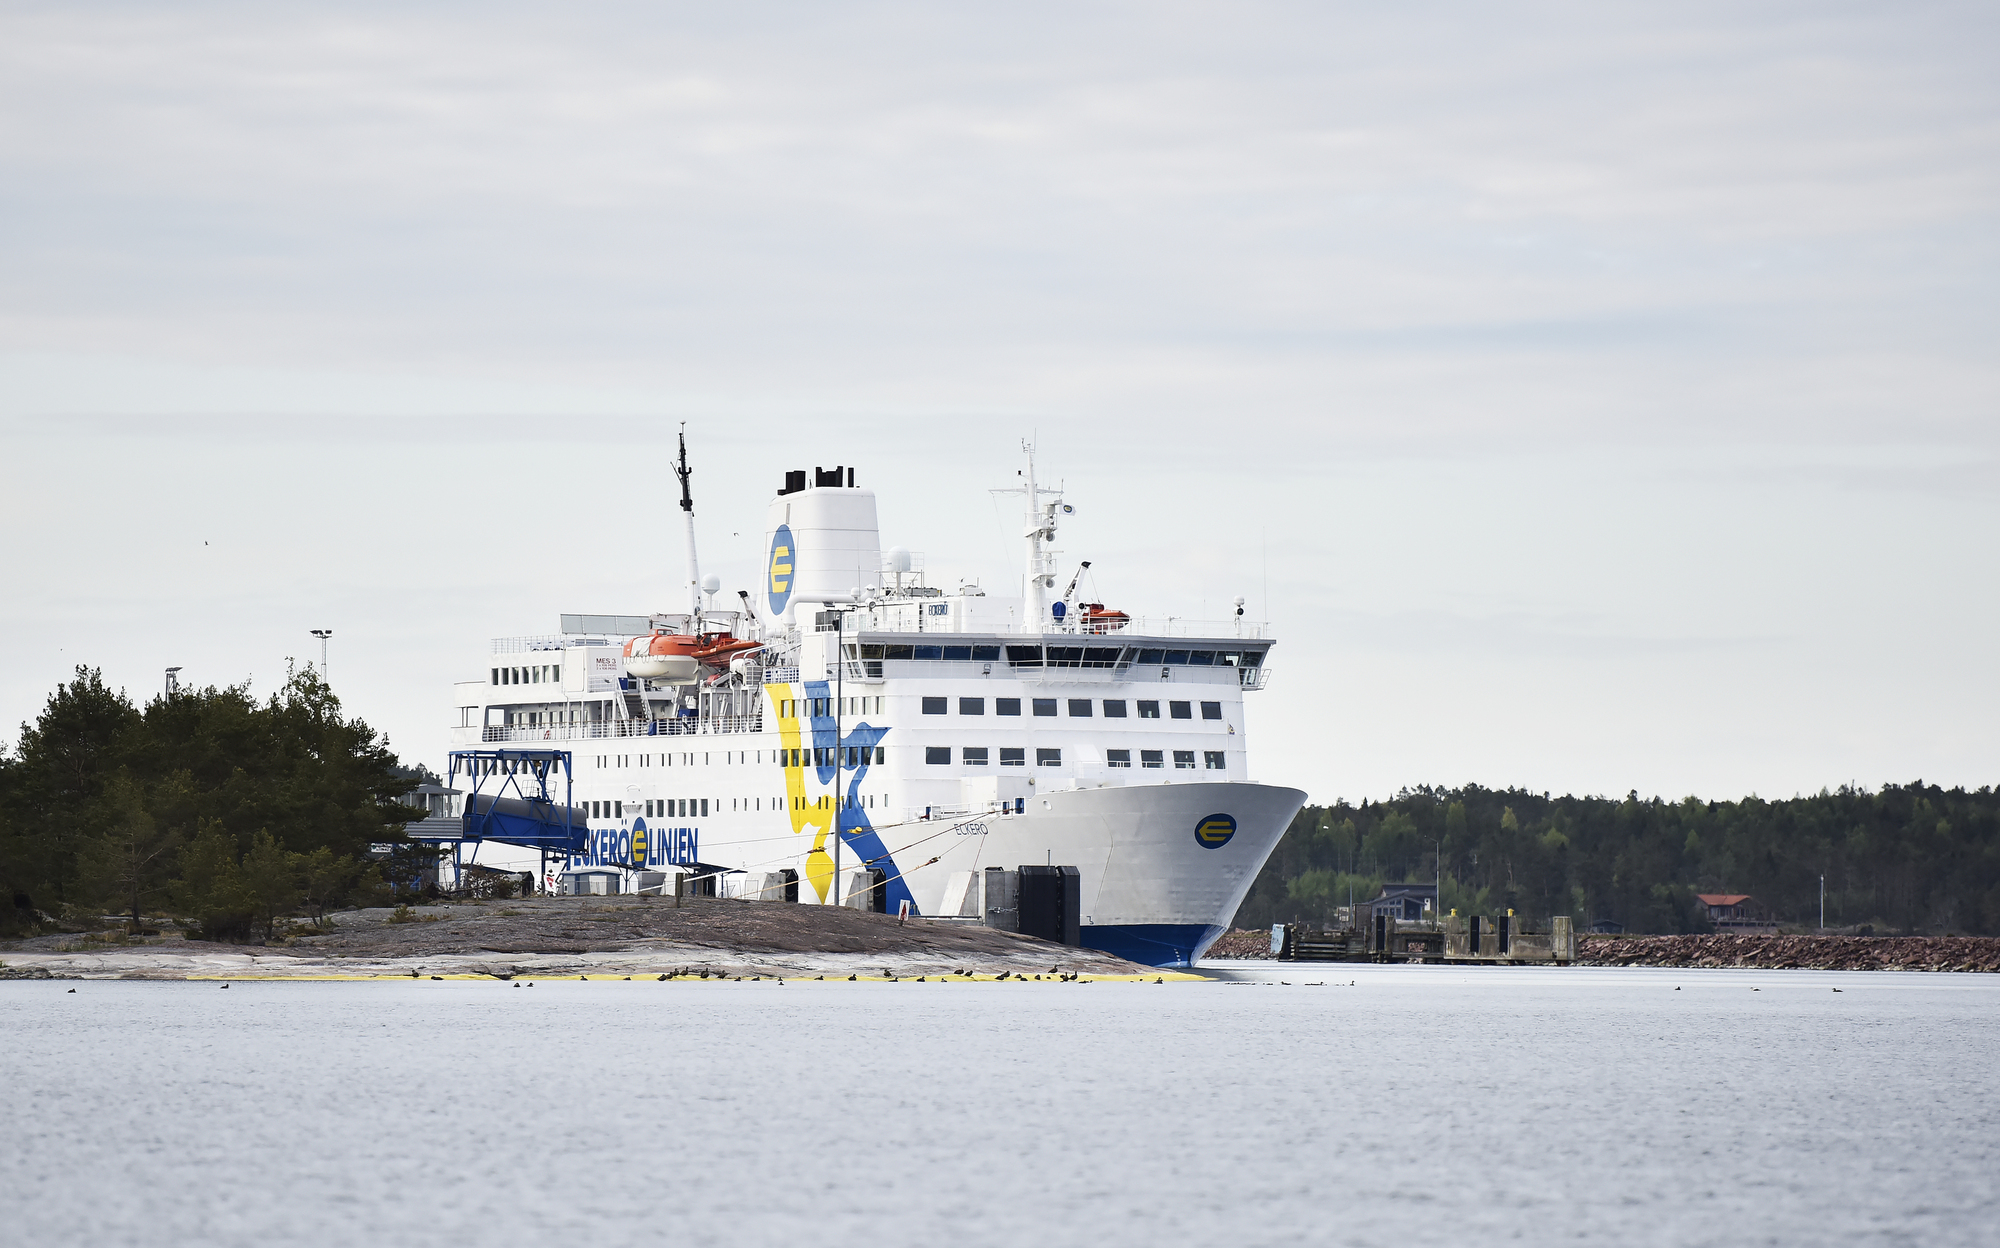 Kortare köer med enklare mat på Eckerölinjen | Nya Åland